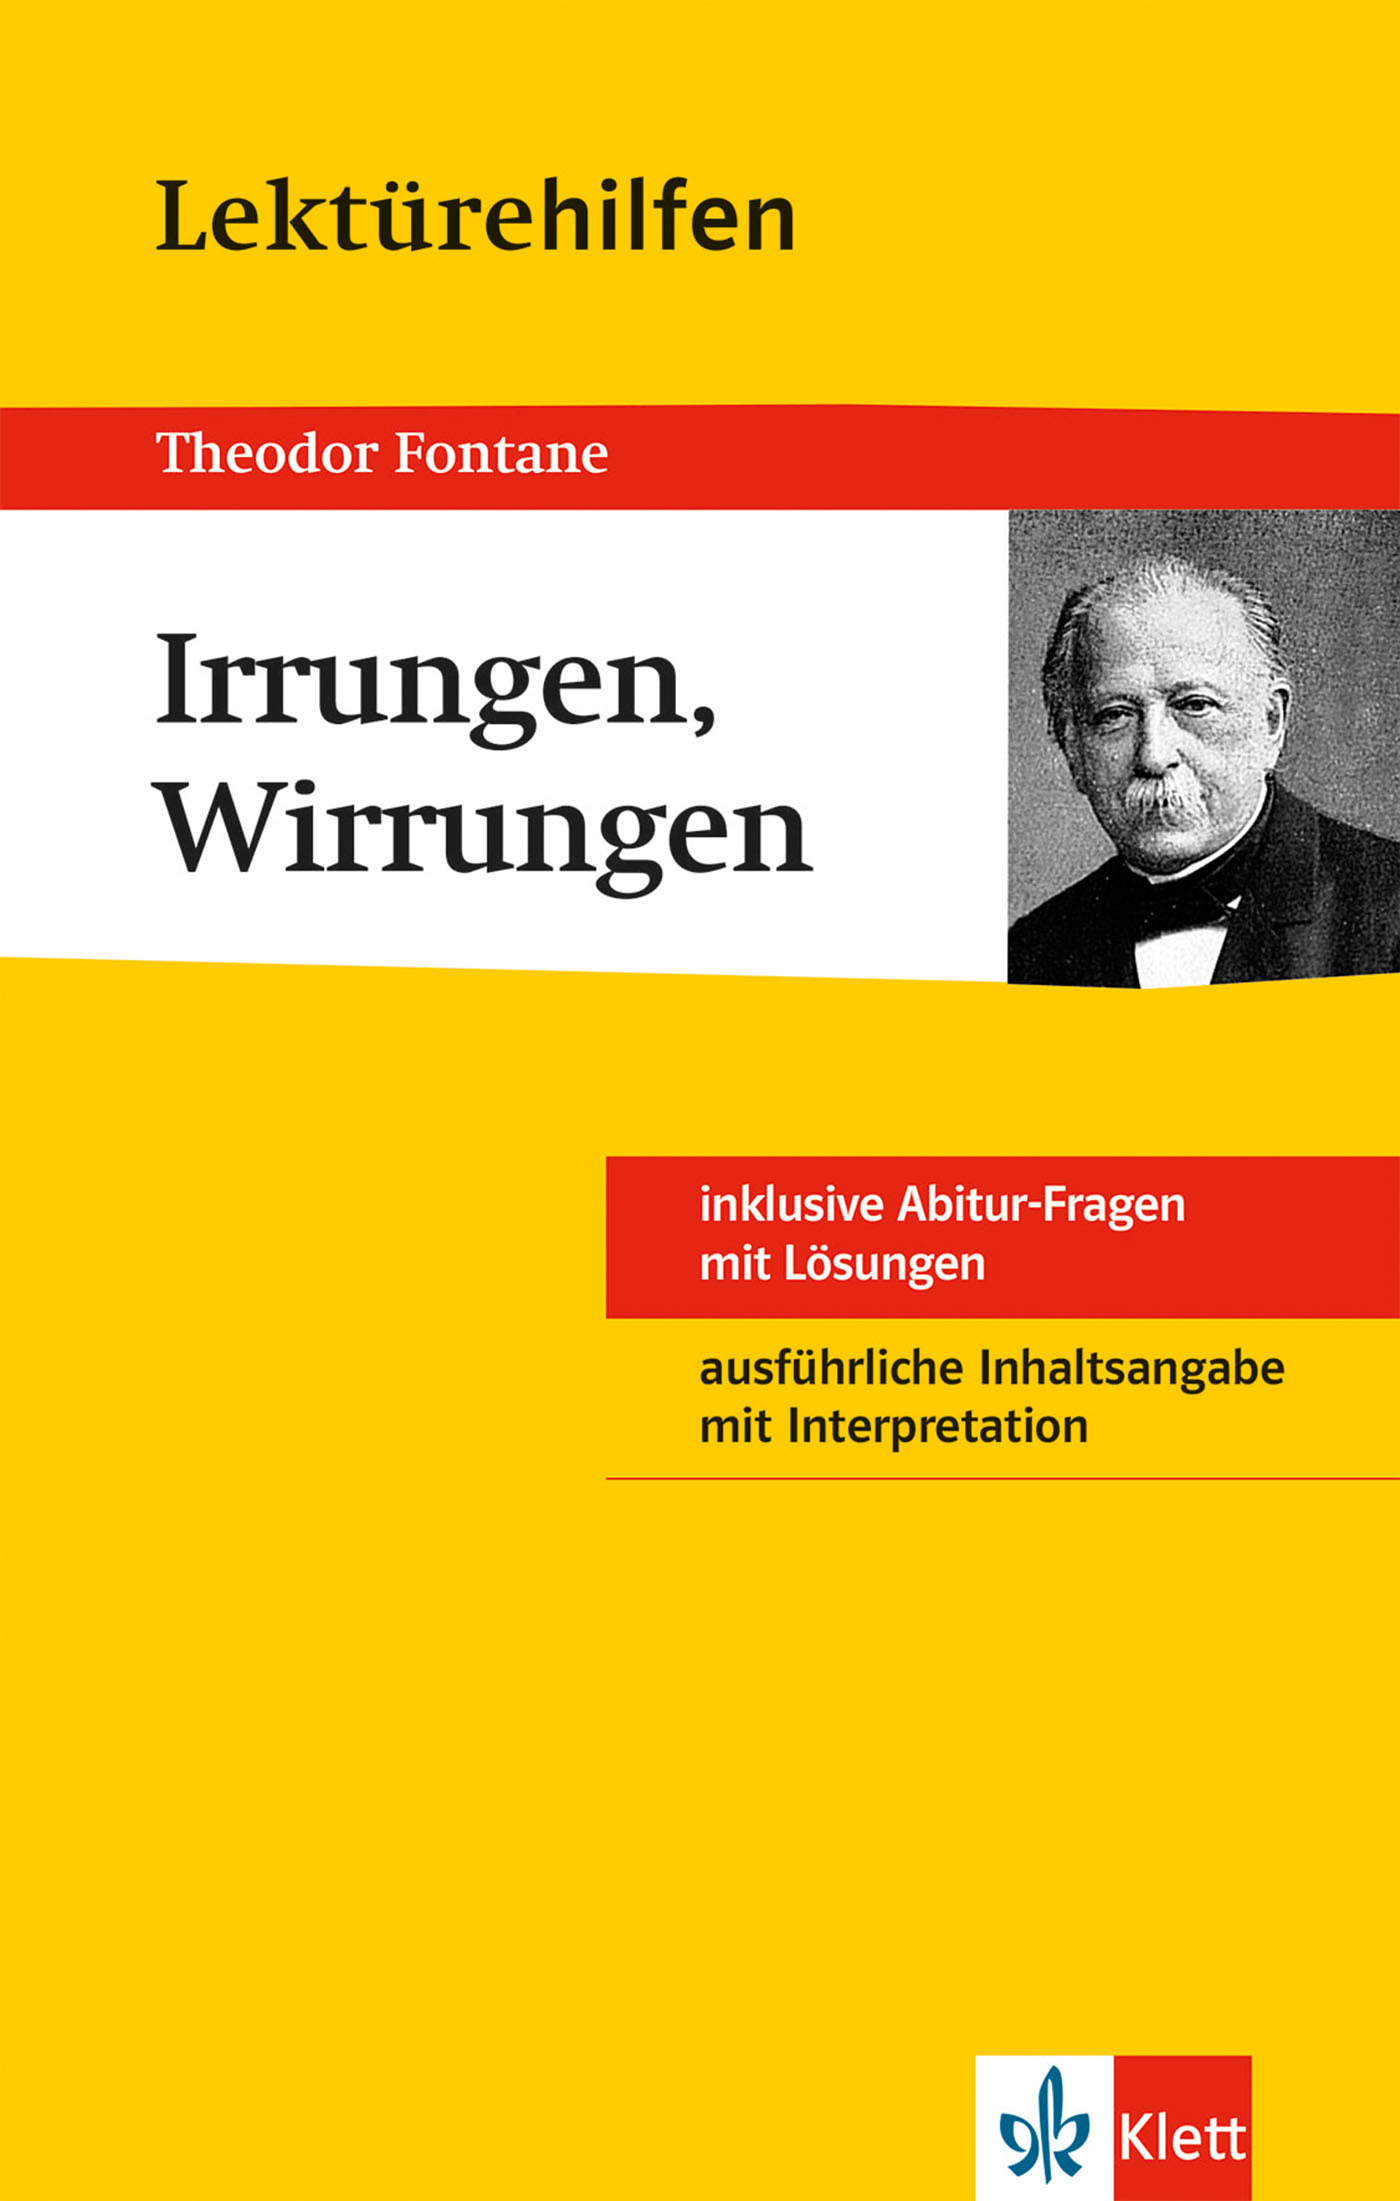 Michael Bengel / Lektürehilfen Theodor Fontane "Irrungen, Wirrungen"